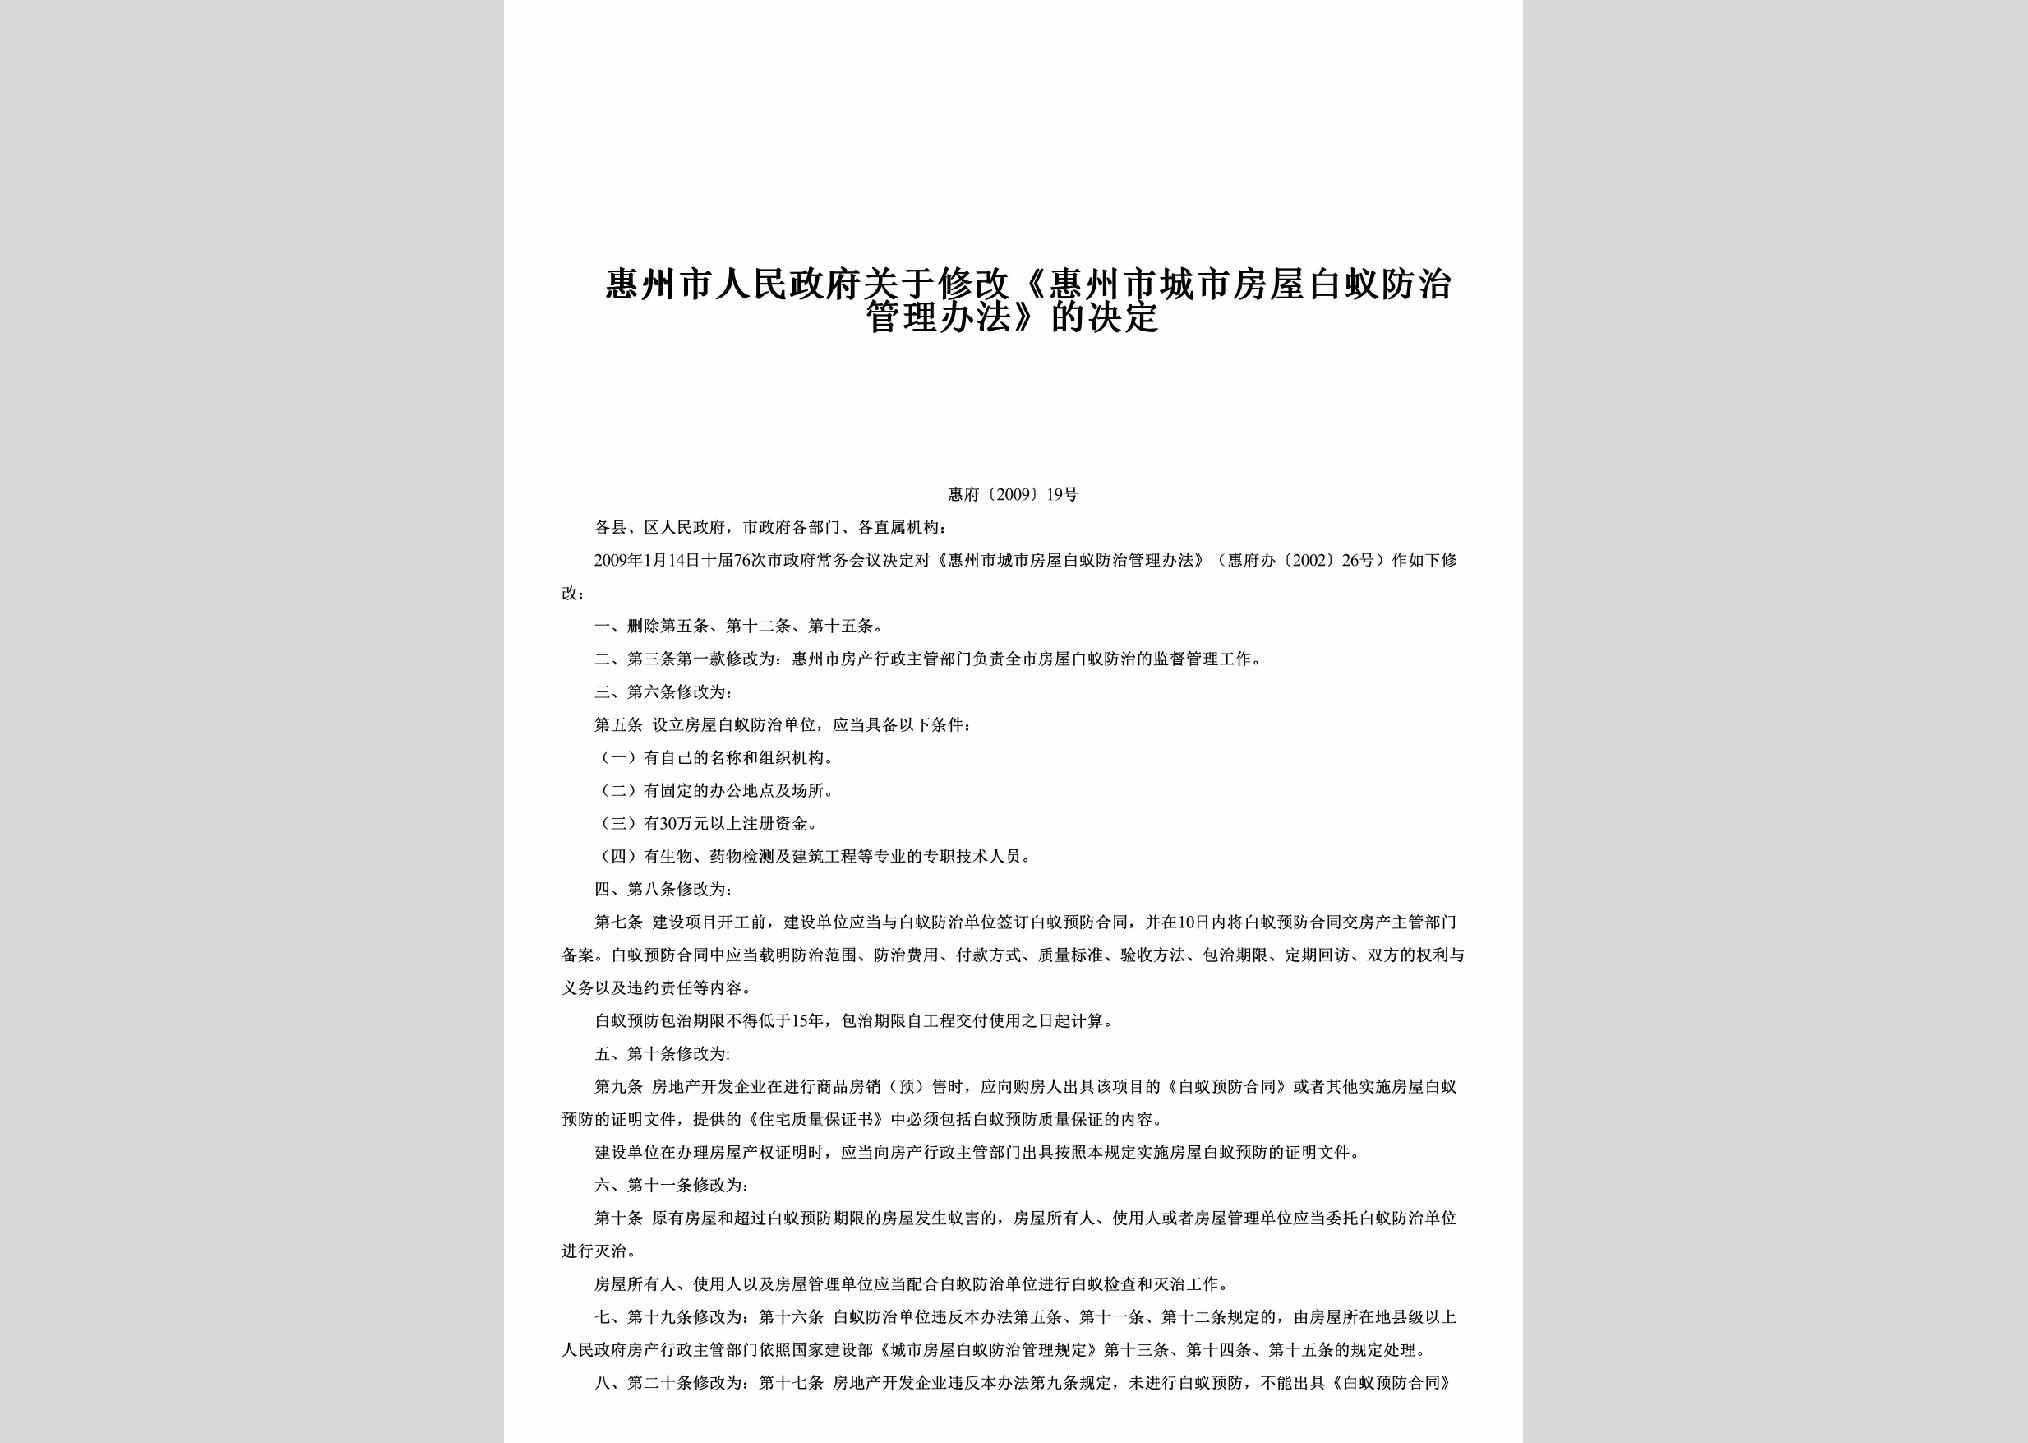 惠府[2009]19号：关于修改《惠州市城市房屋白蚁防治管理办法》的决定